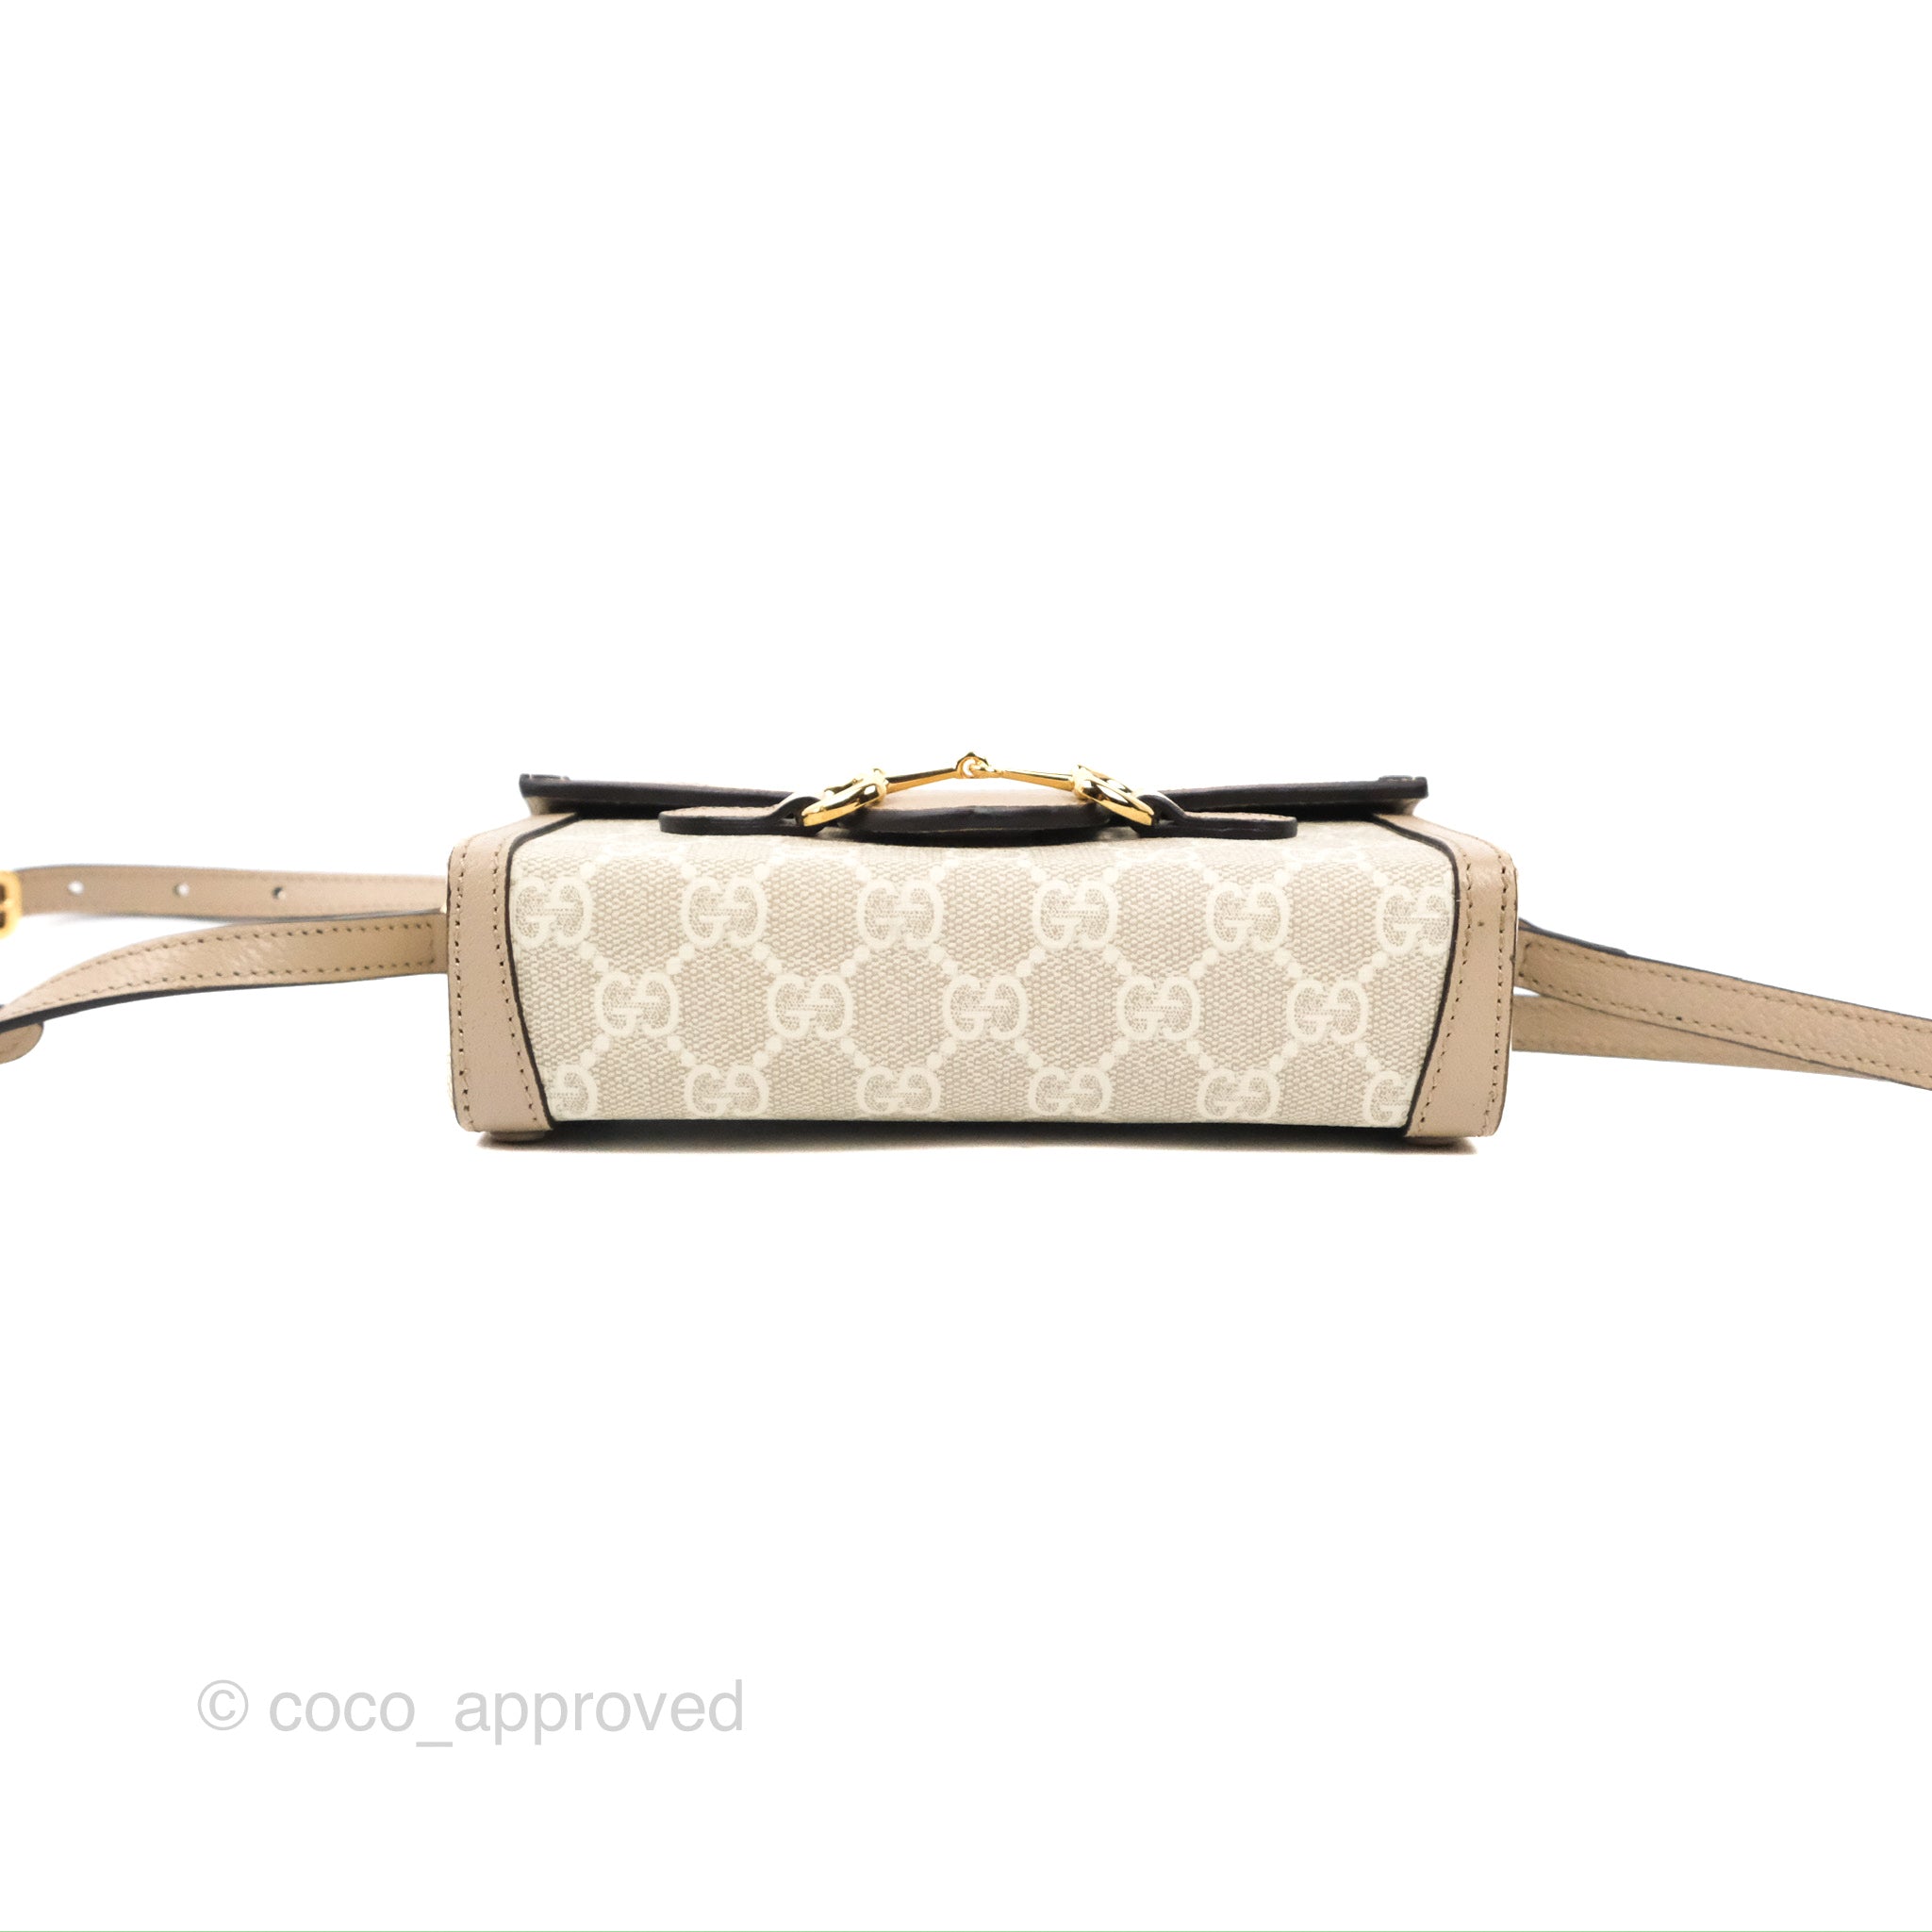 Gucci Horsebit 1955 mini bag in beige and white GG rhombus